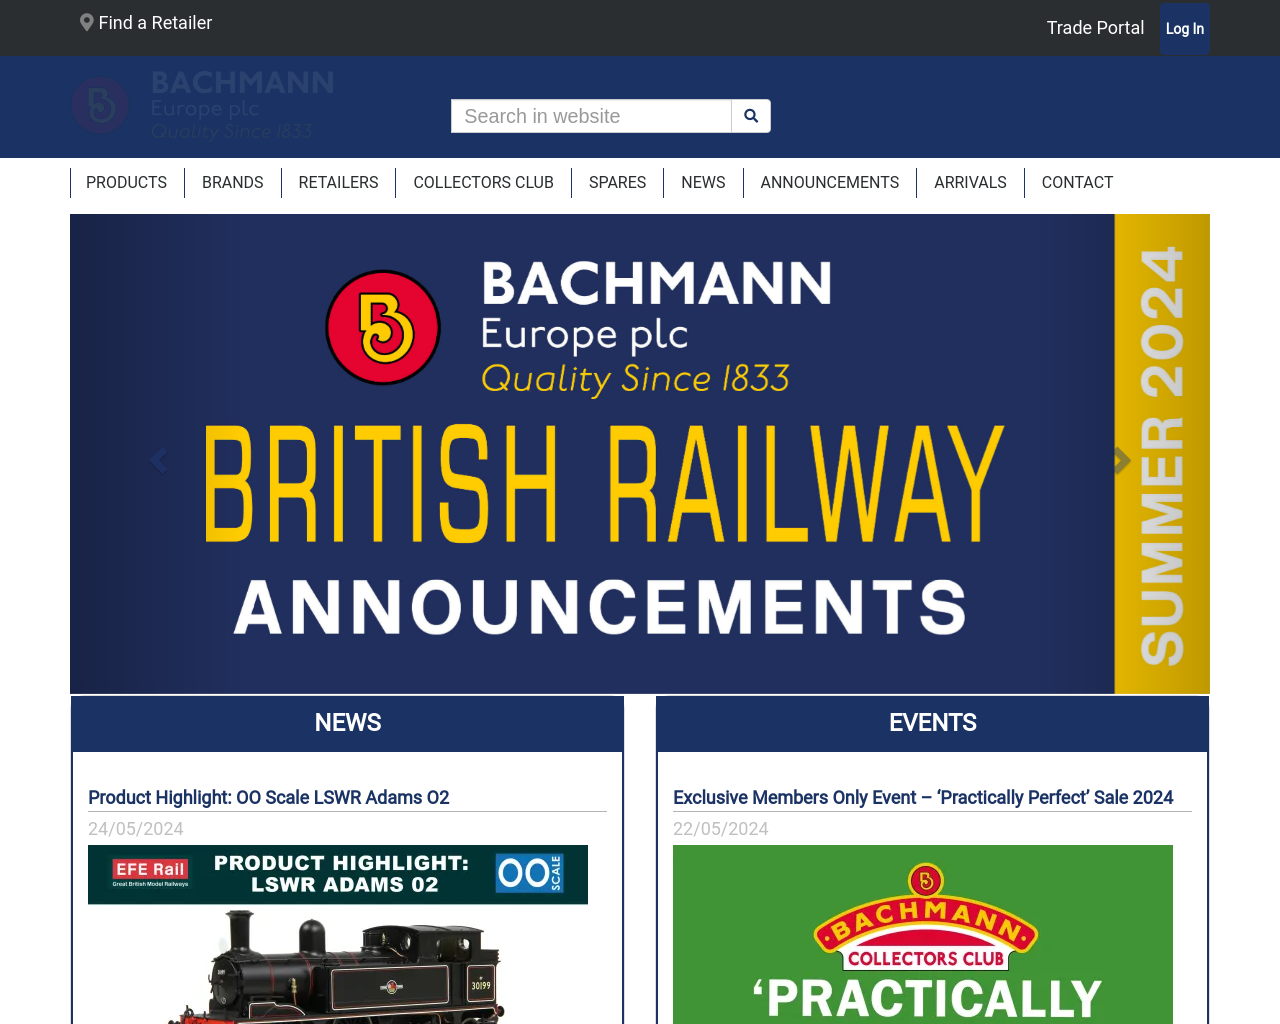 bachmann.co.uk